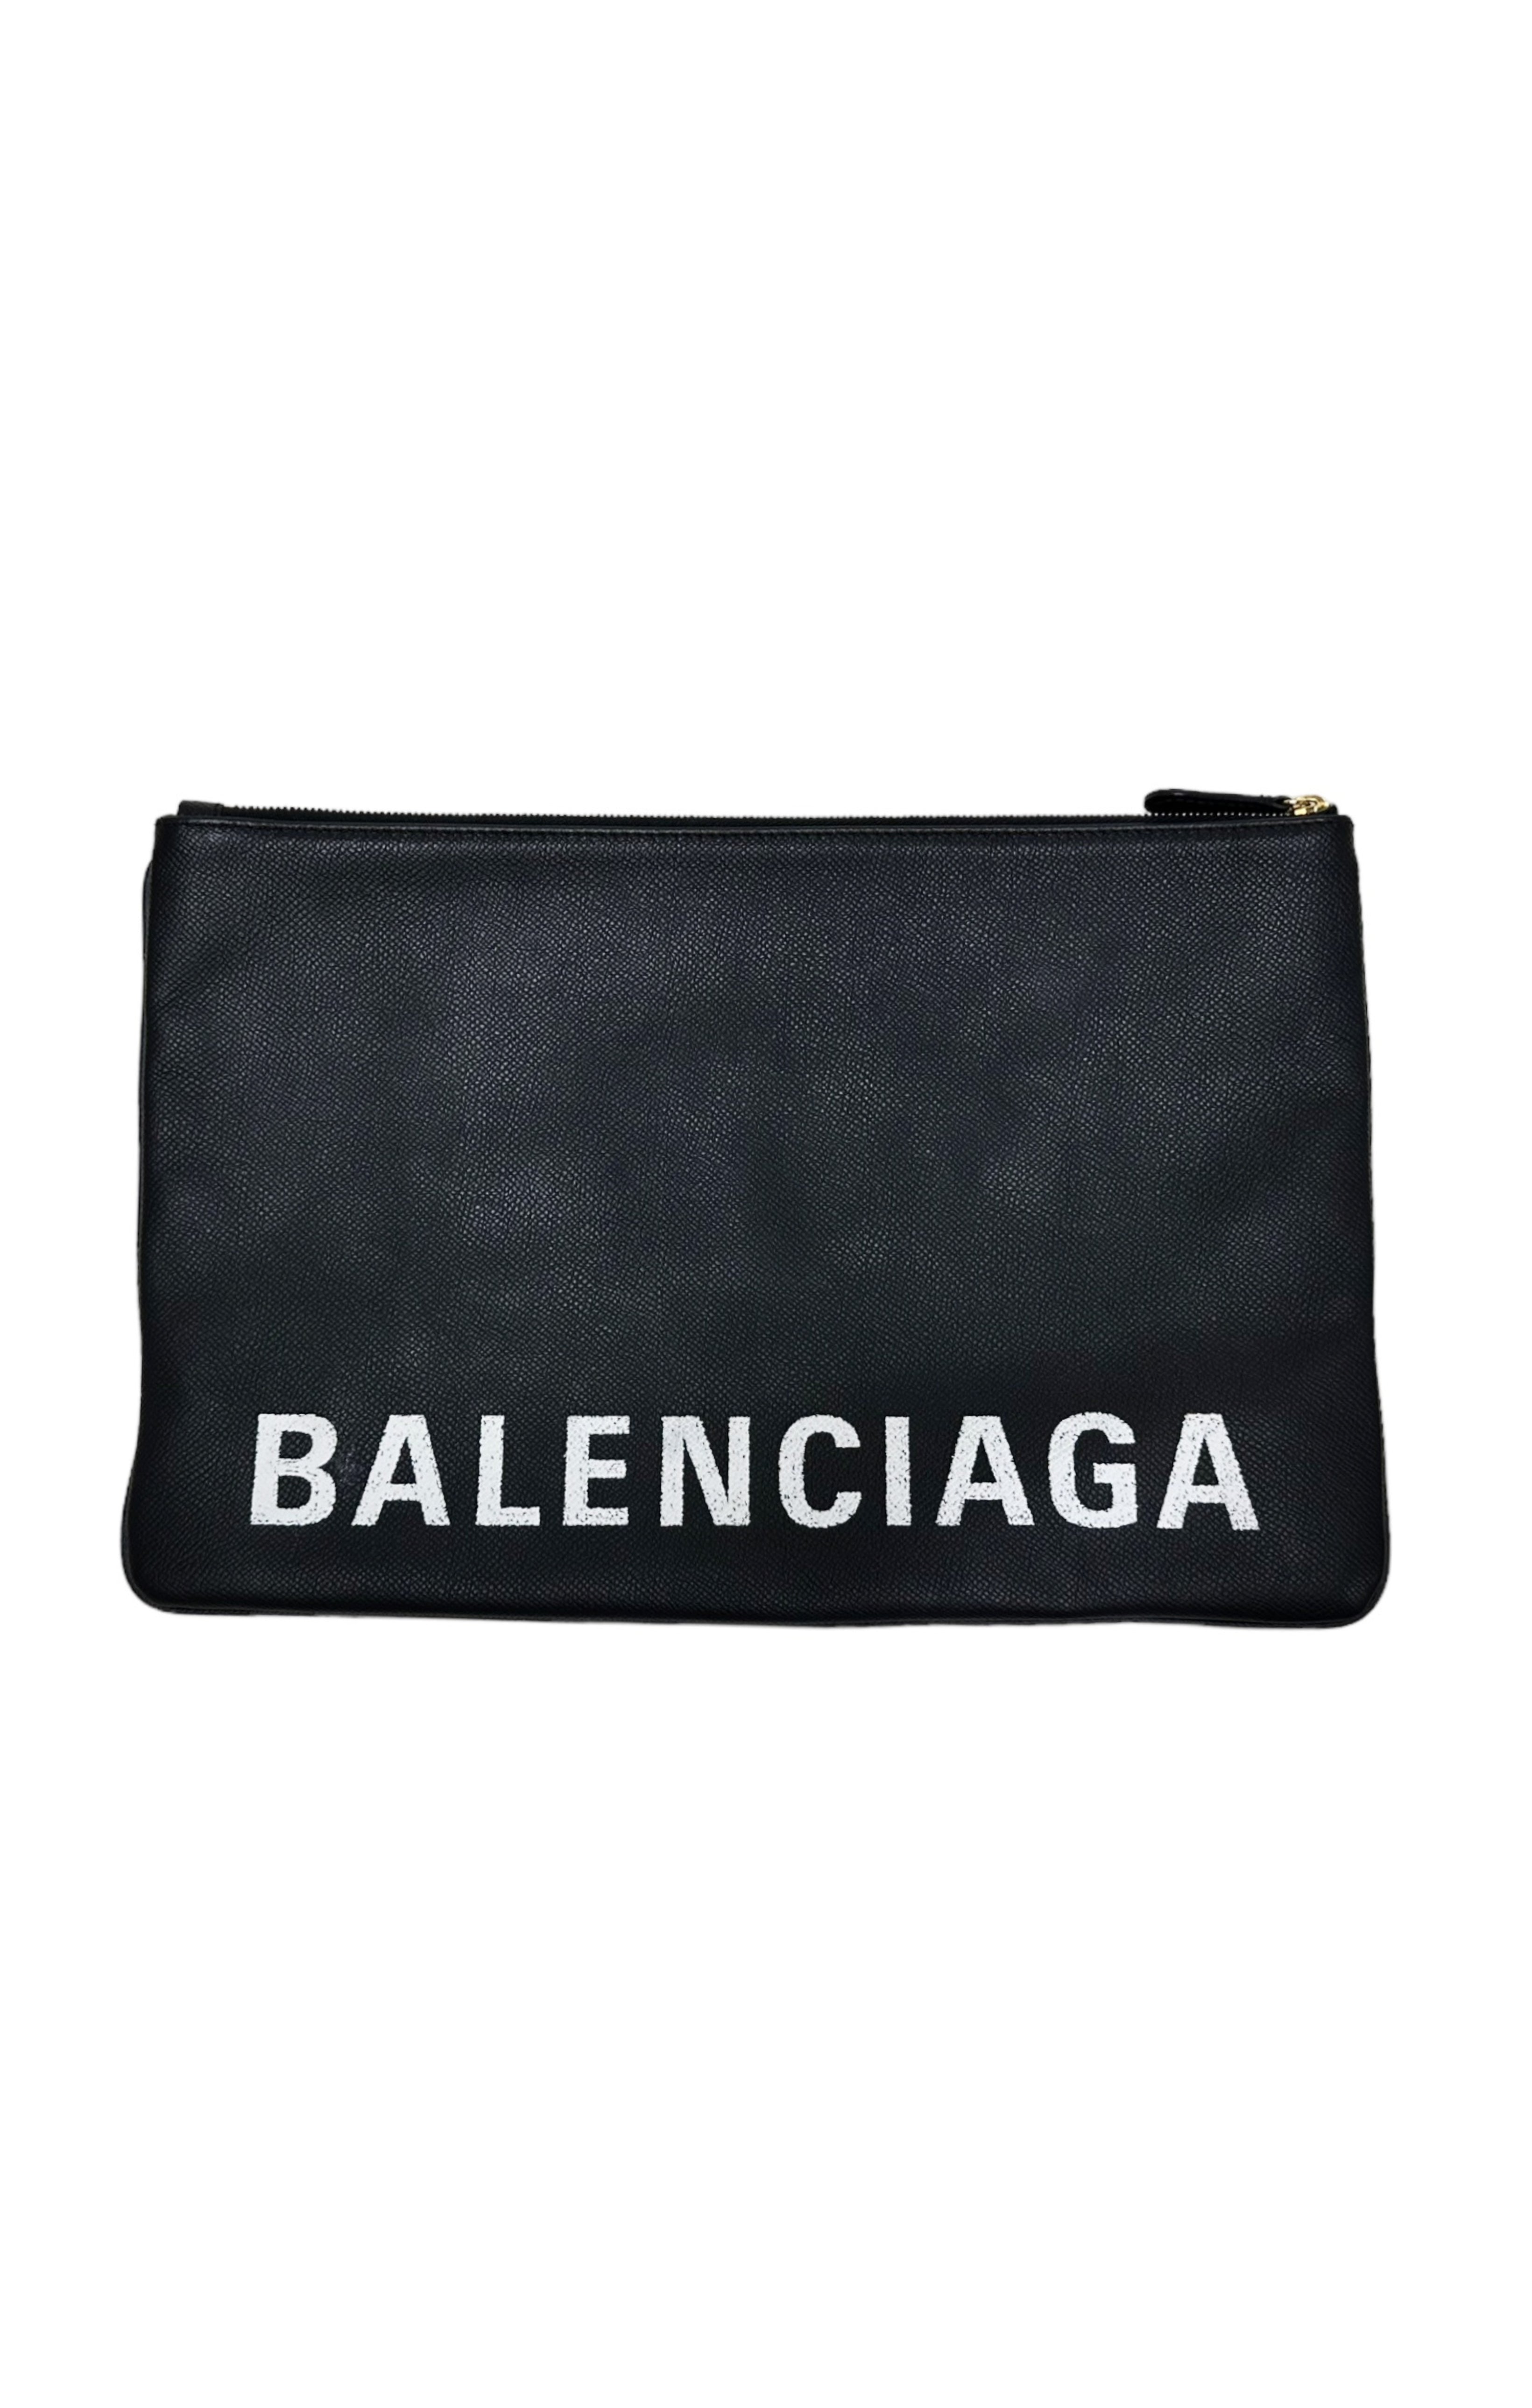 BALENCIAGA Bag Size: 13.75" x 0.5" x 9"